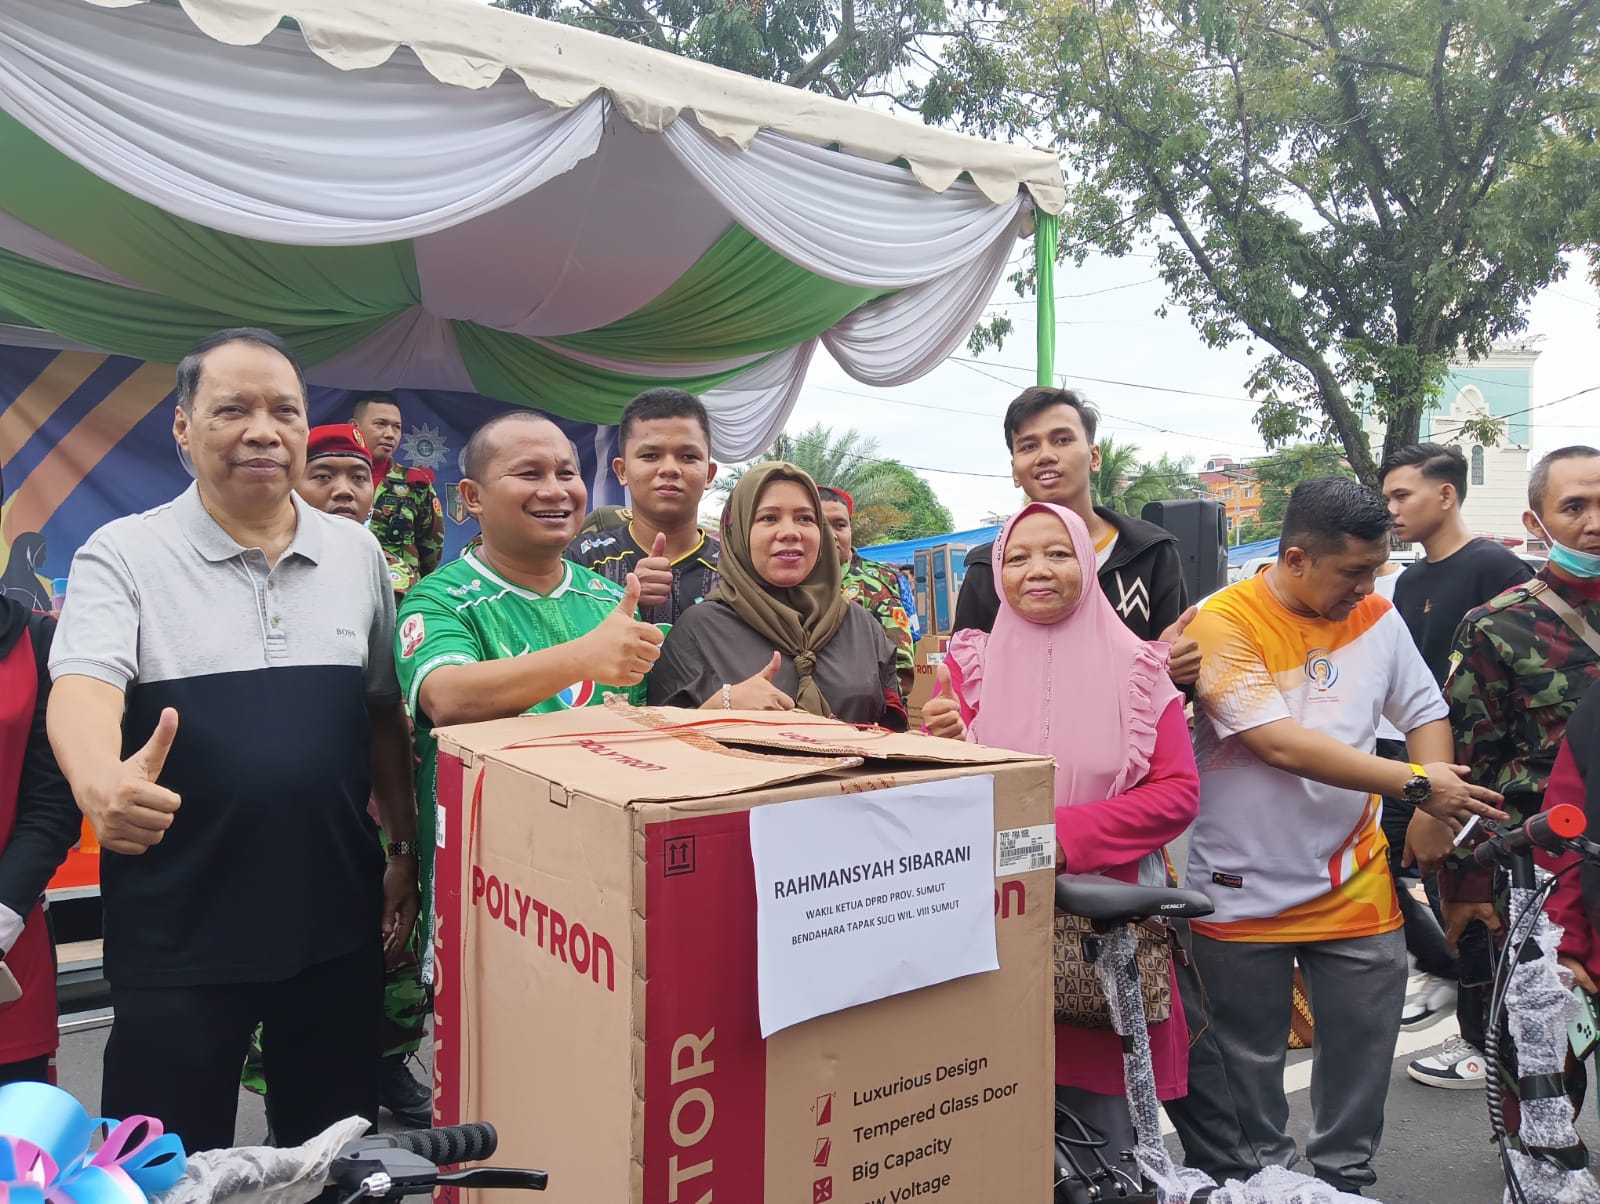 Rahmansyah Sibarani Semarakkan Jalan Sehat Gebyar Muktamar Solo Diikuti Ribuan Warga Muhammadiyah Medan